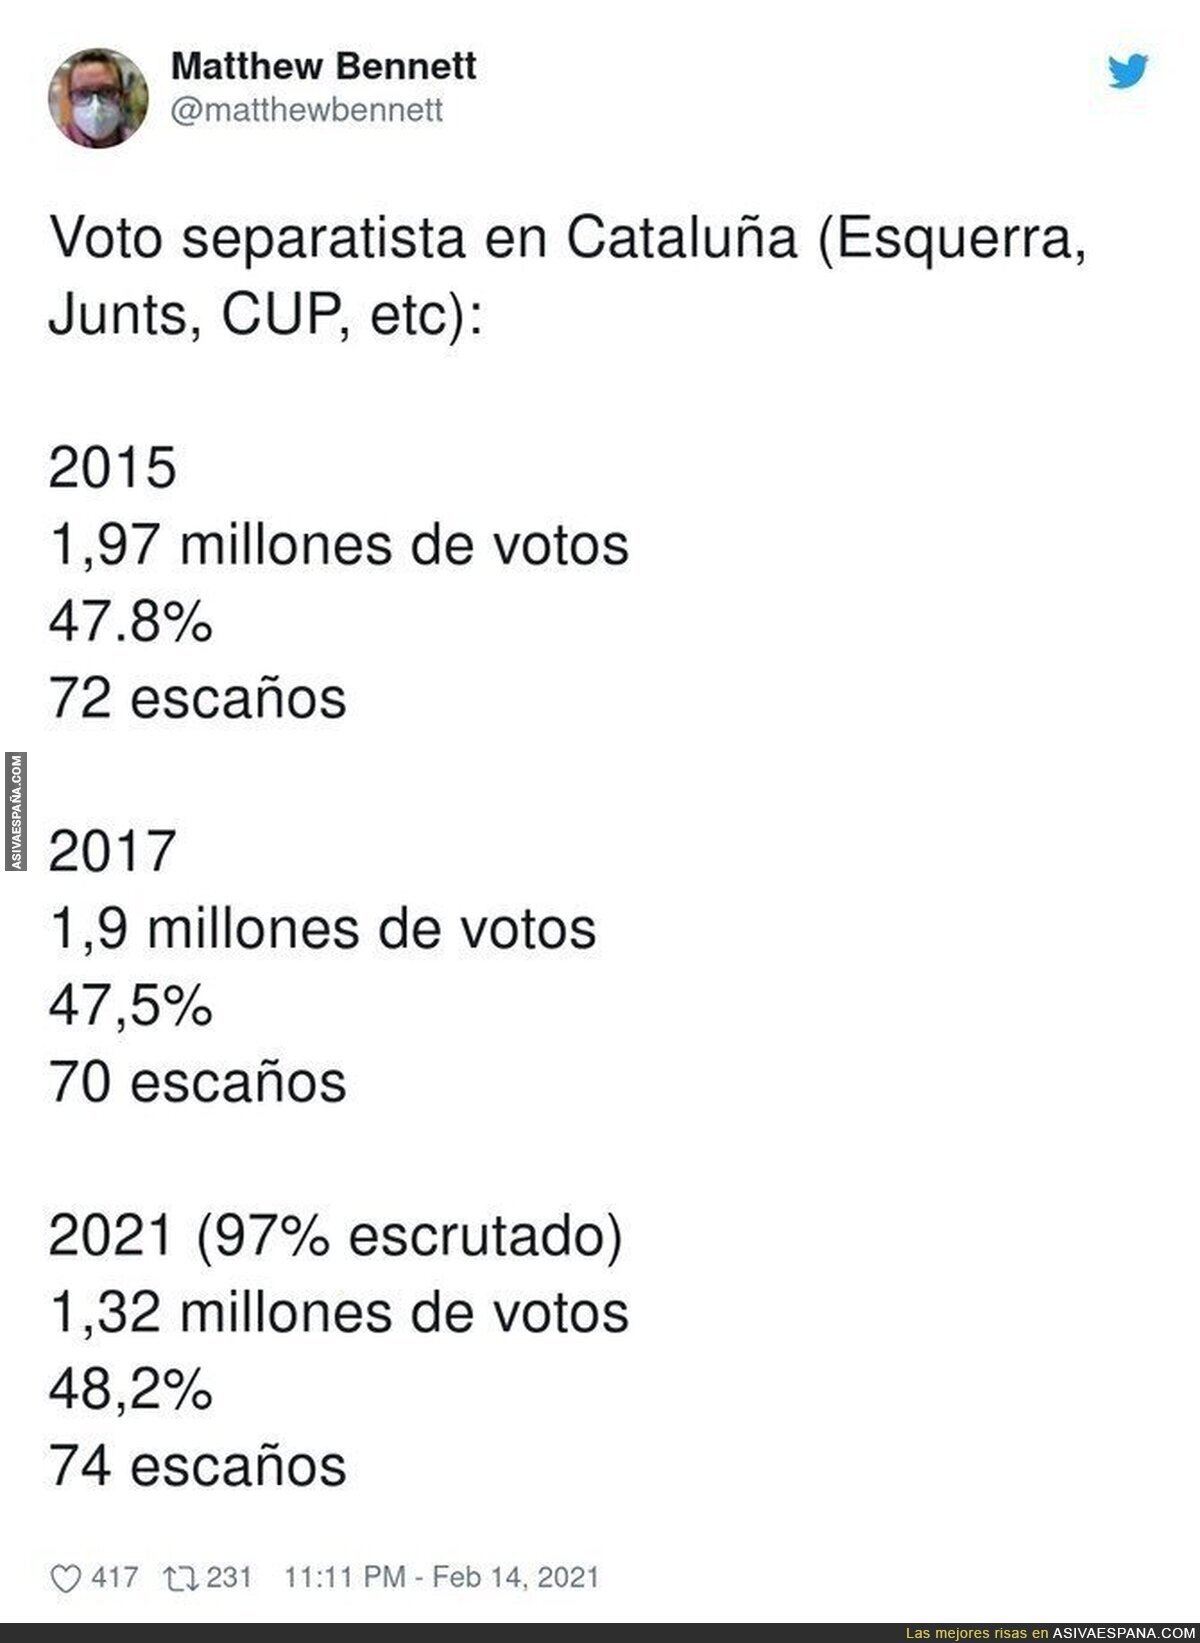 La caída de votantes en general en Catalunya